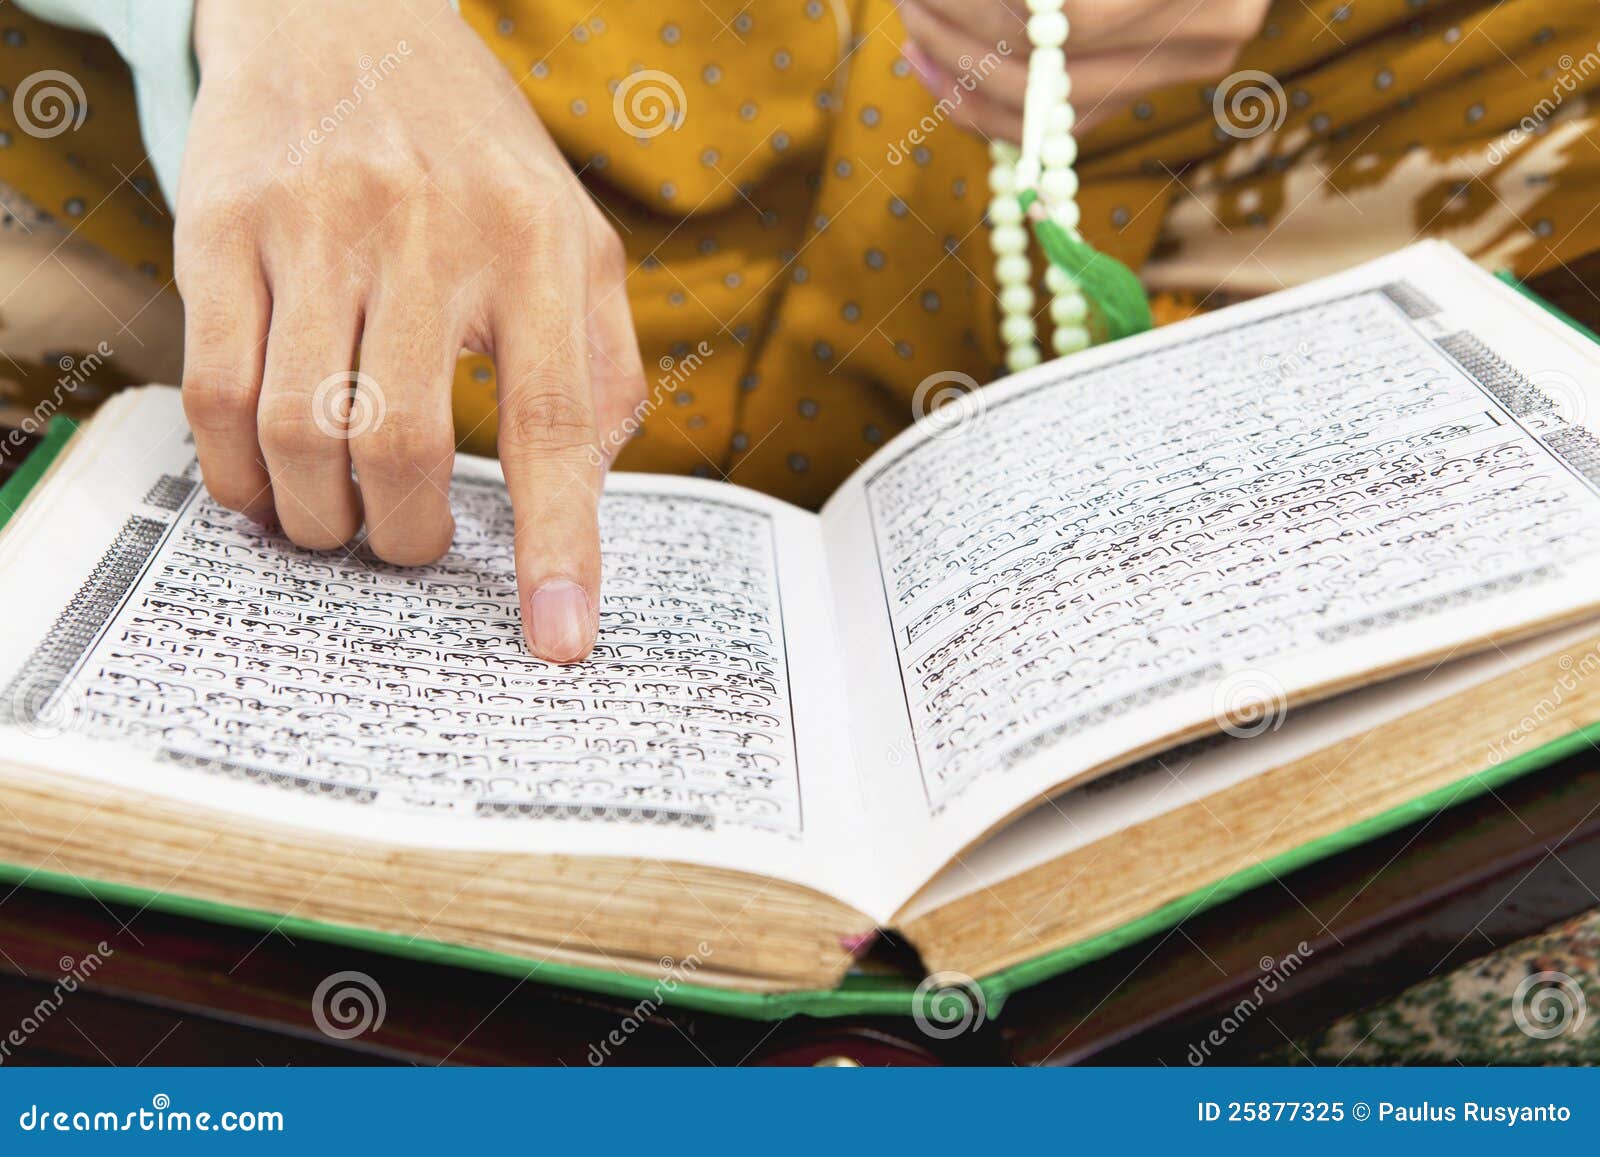 Reading al quran stock image Image of islam koran 